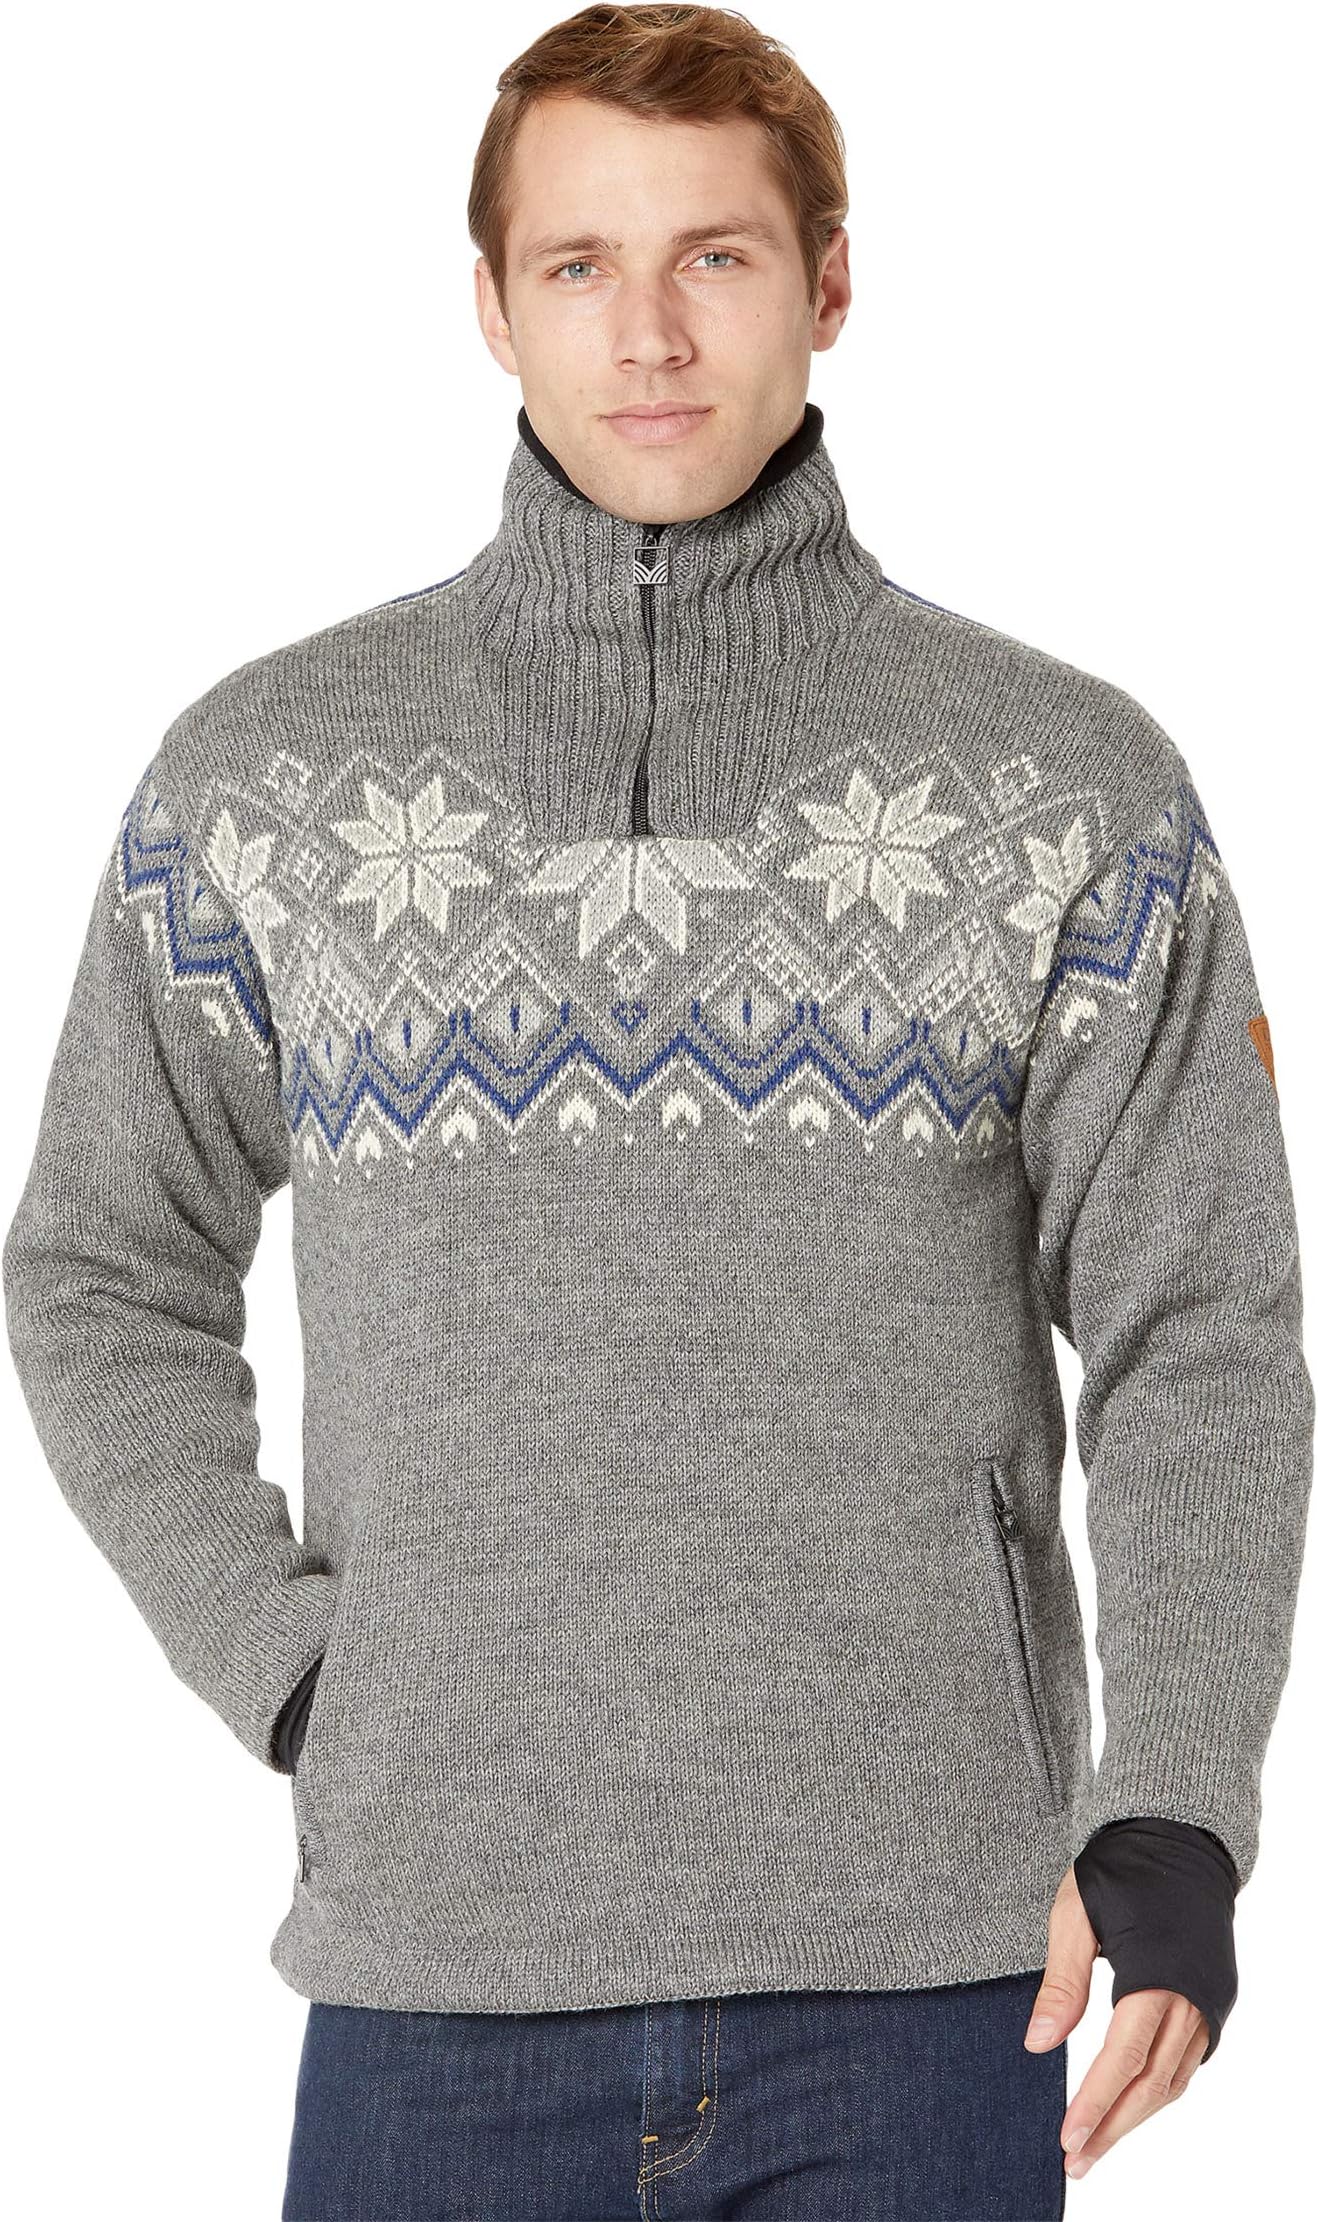 Водонепроницаемый мужской свитер Fongen Dale of Norway, цвет E-Smoke/Off-White/Indigo/Charcoal